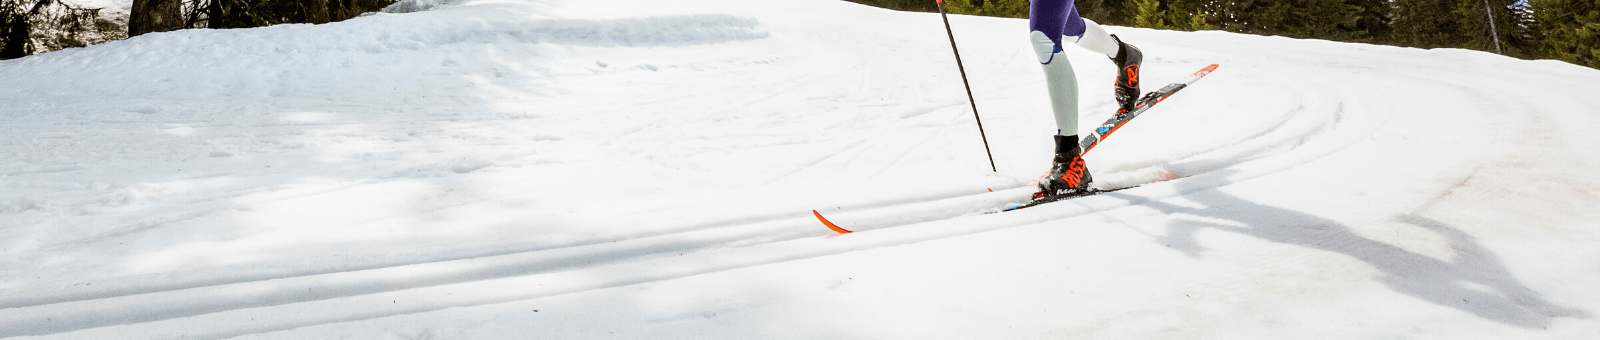 Skis de fond Classique